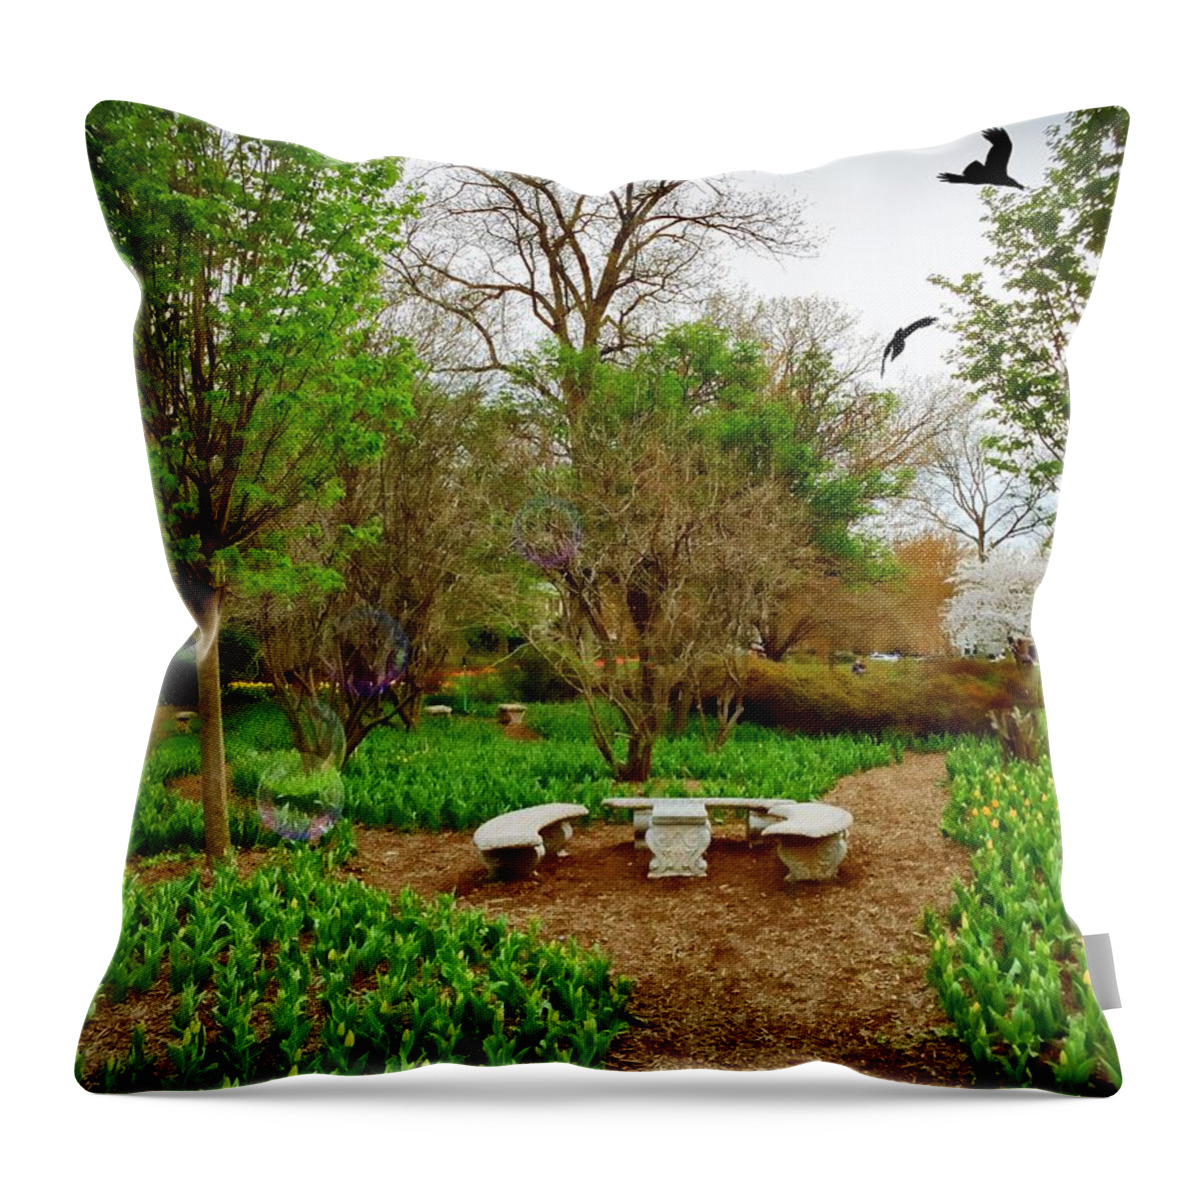 Garden Throw Pillow featuring the photograph Garden of Eden by Chris Montcalmo